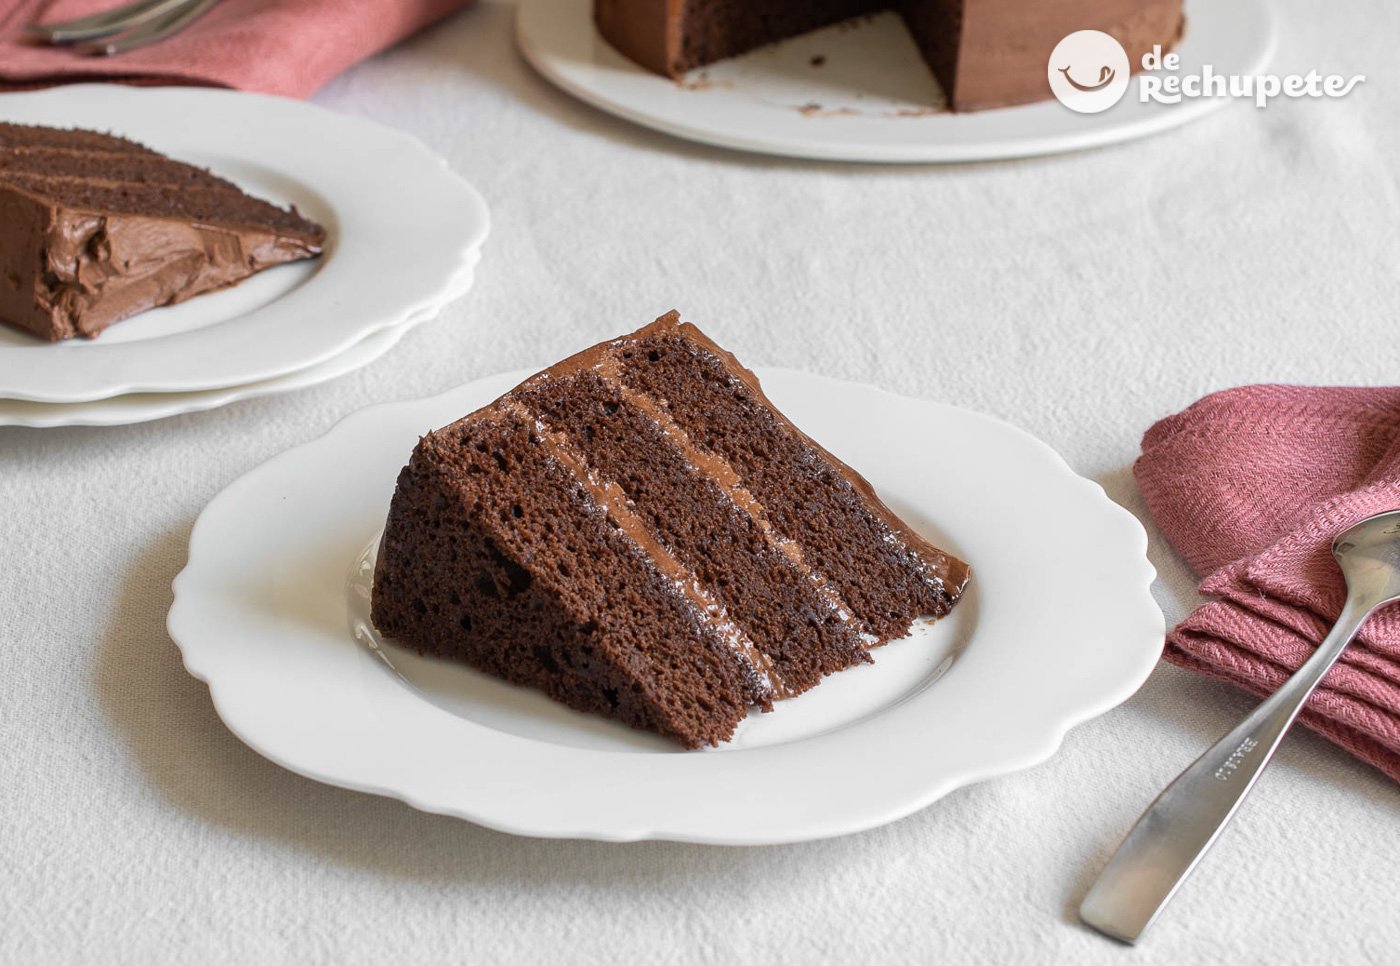 Cómo hacer el mejor pastel de chocolate - De Rechupete